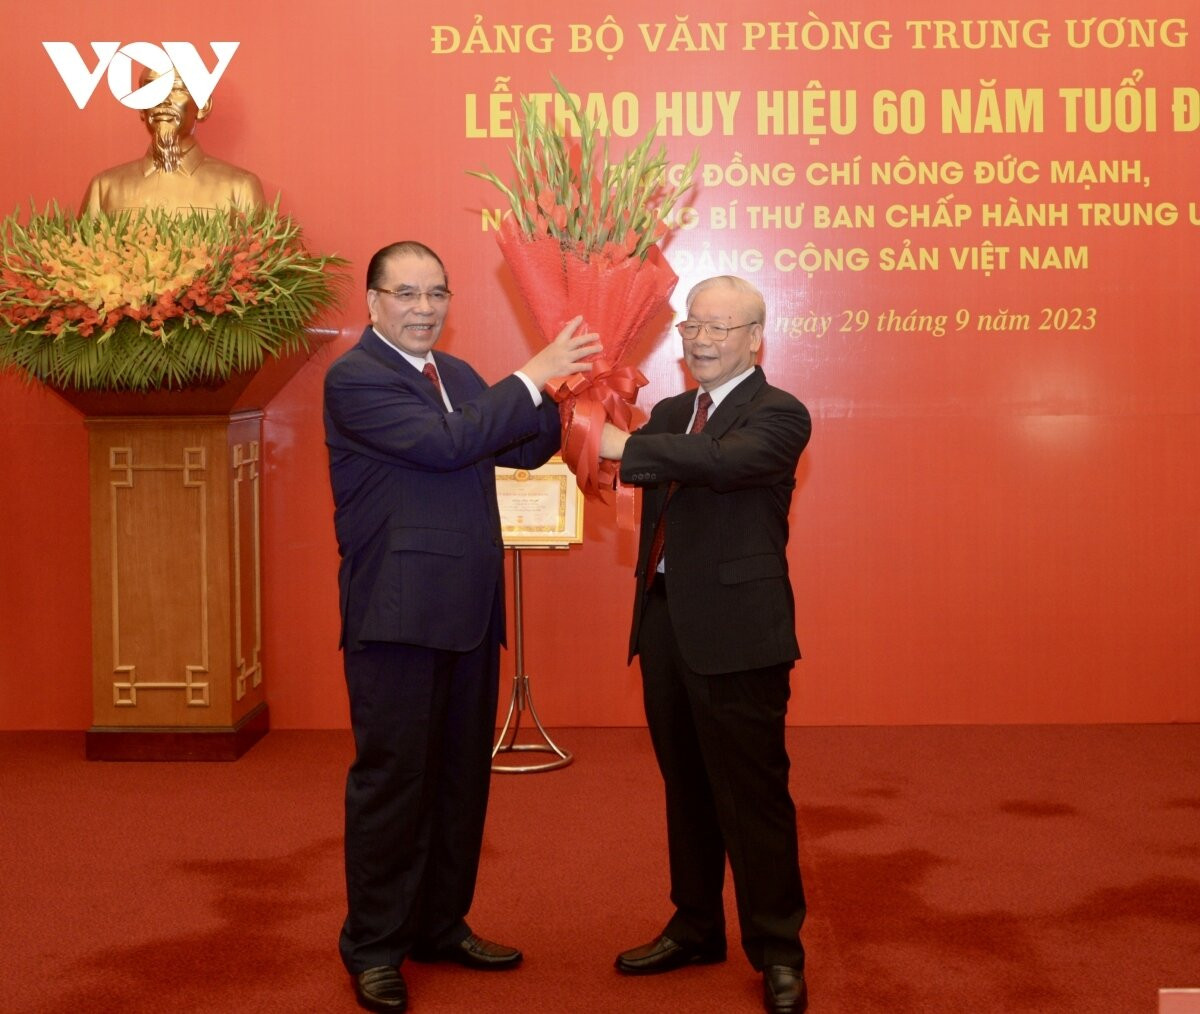 Tổng Bí thư Nguyễn Phú Trọng tặng hoa chúc mừng nguyên Tổng Bí thư Nông Đức Mạnh.